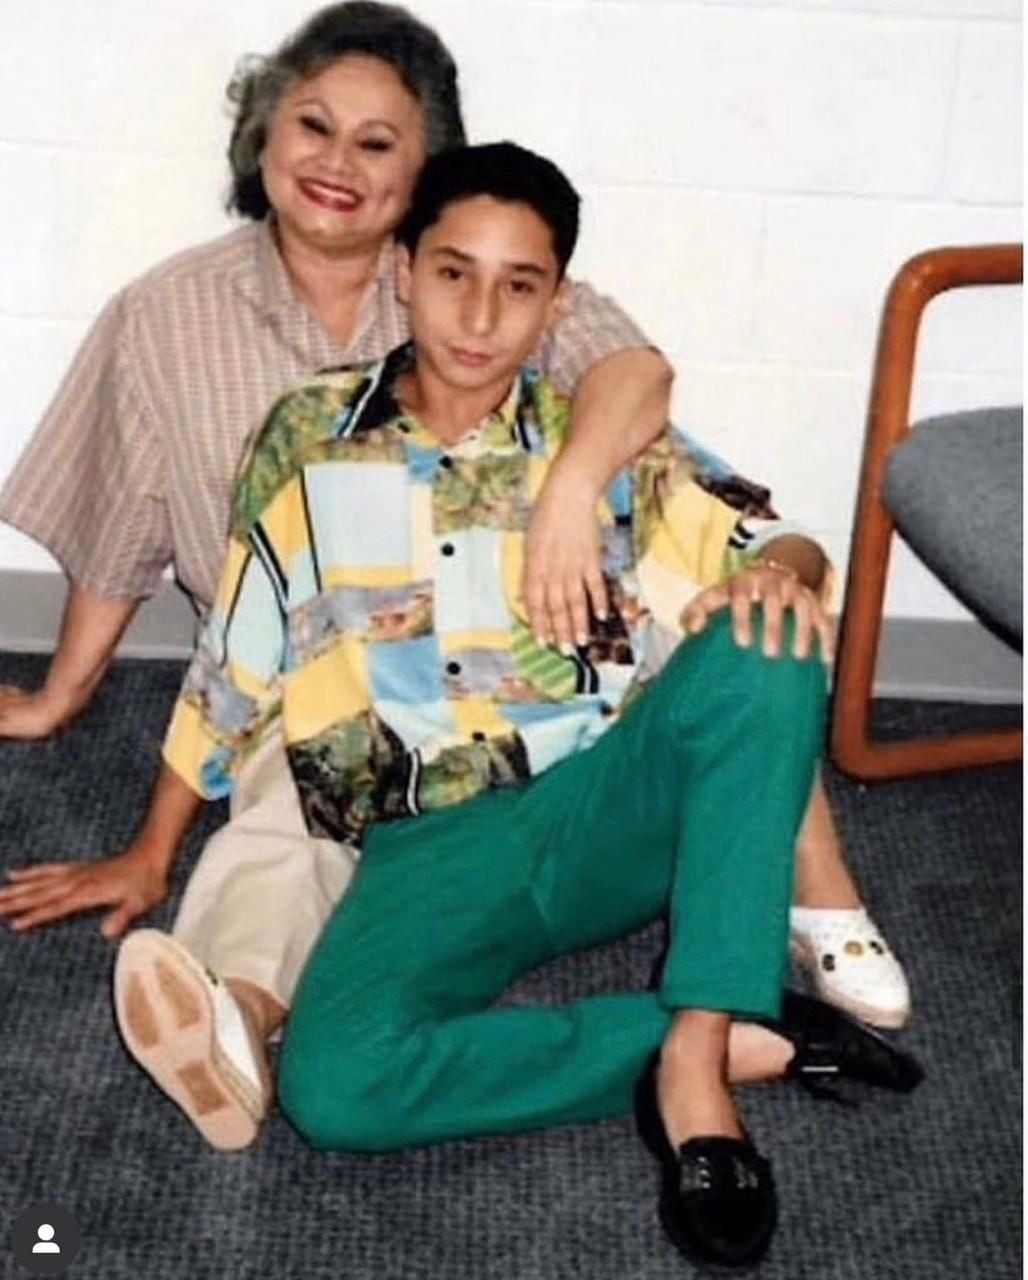 Michael Corleone, el hijo menor de Griselda Blanco, es el único que sigue con vida.  Él comparte en sus redes sociales recuerdos con su madre.